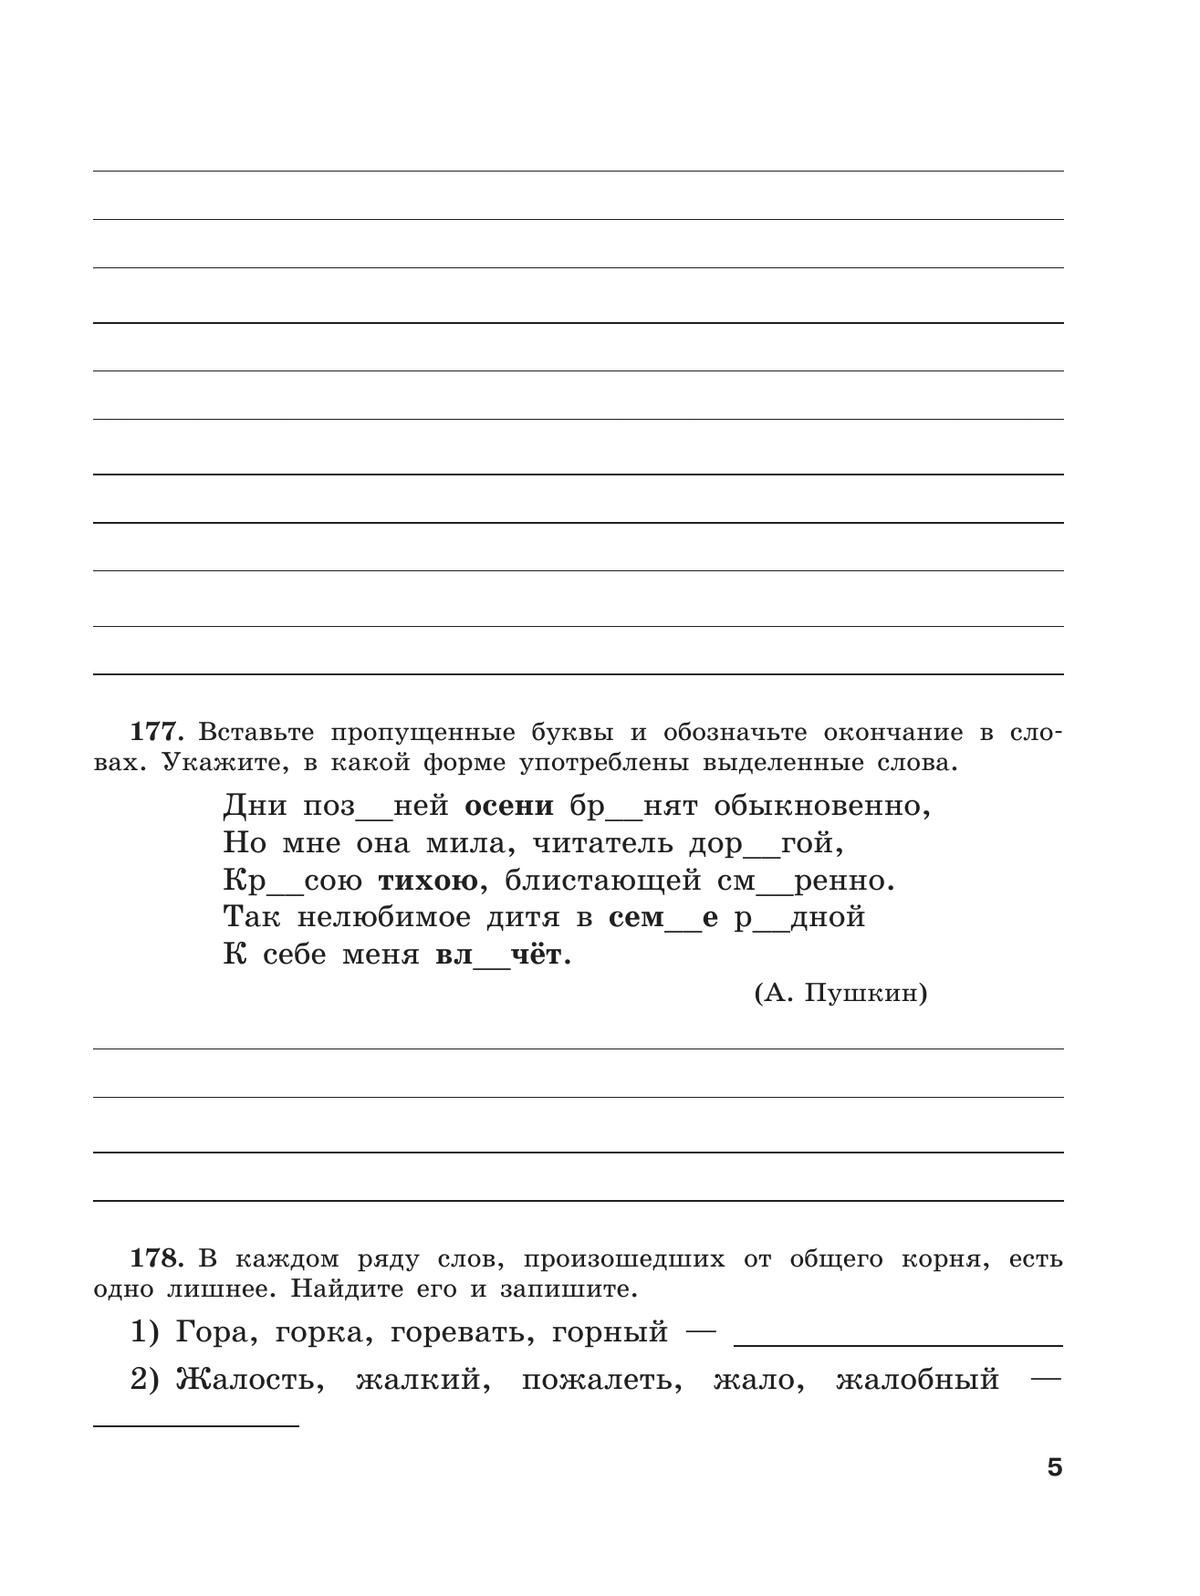 Скорая помощь по русскому языку. Рабочая тетрадь. 5 класс. В 2 ч. Часть 2 6